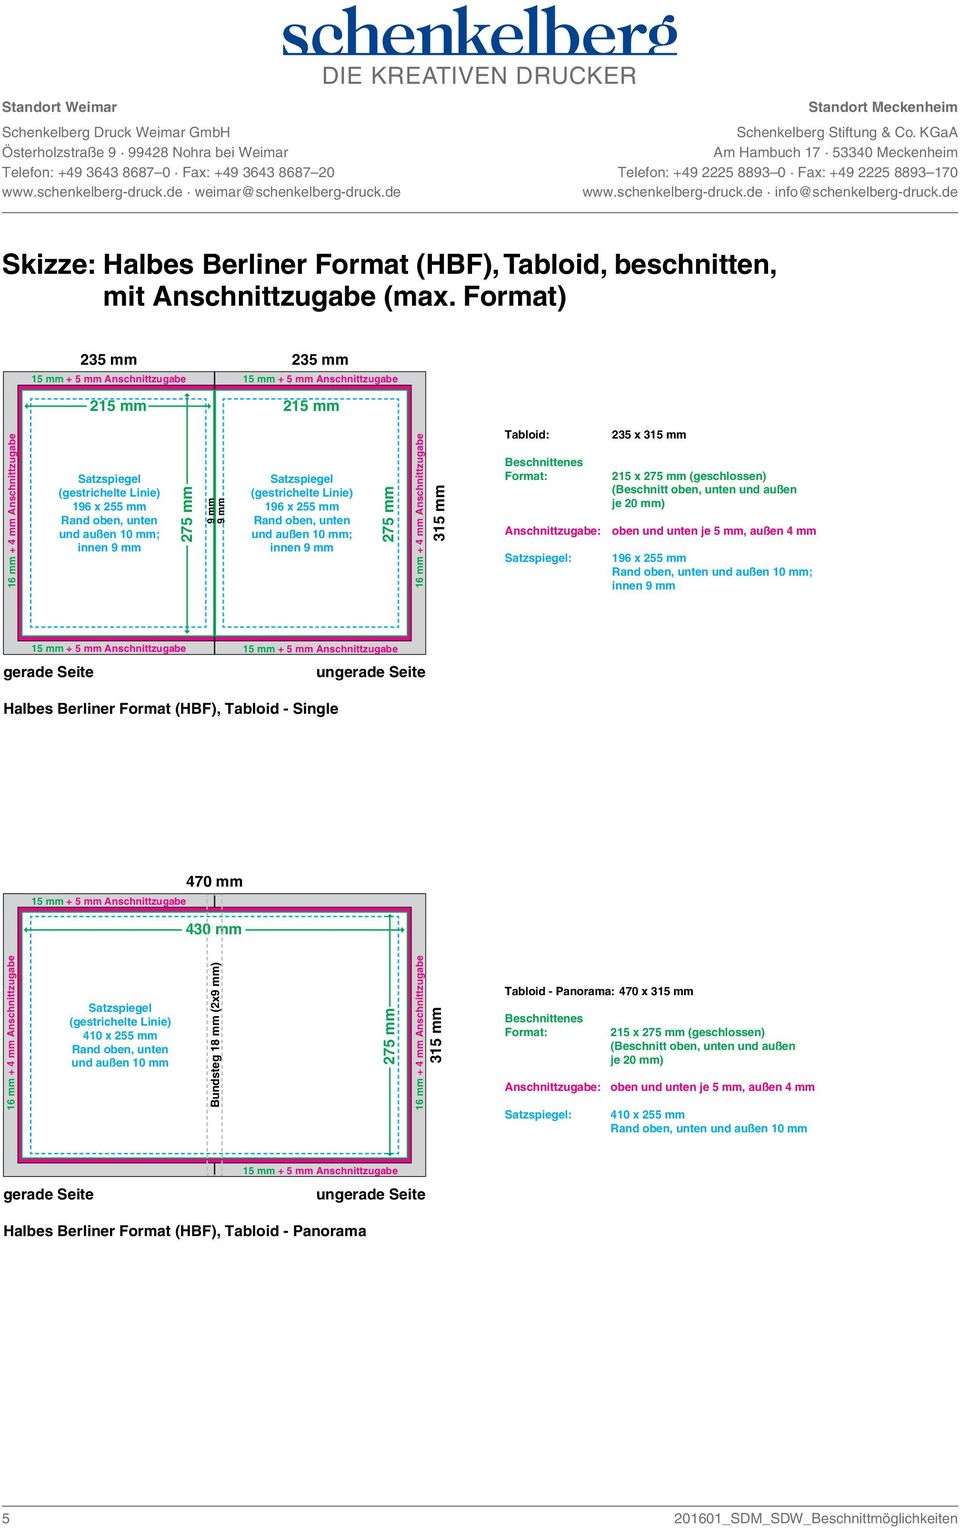 196 x 25 Halbes Berliner Format (HBF), Tabloid - Single 410 x 25 und außen 10 mm Bundsteg 18 mm (2x) 27 31 Tabloid - Panorama: 470 x 31